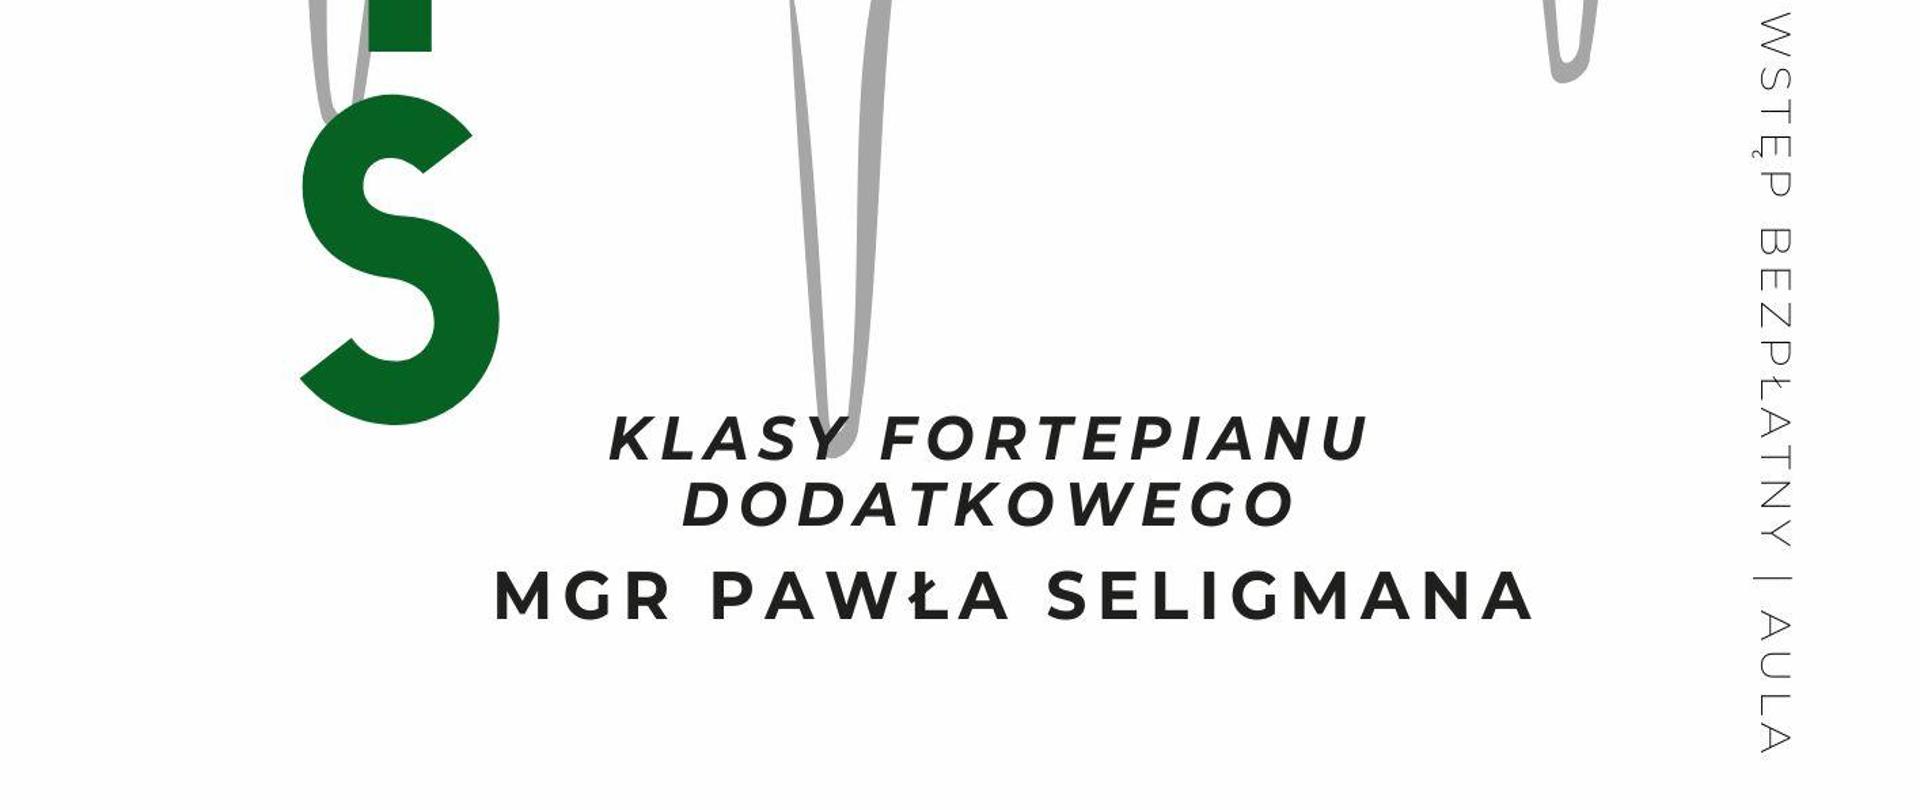 Plakat informacyjny dotyczący popisu klasy fortepianu dodatkowego mgr Pawła Seligmana odbywającego się w dniu 18.05.2024 o godz. 19.00.